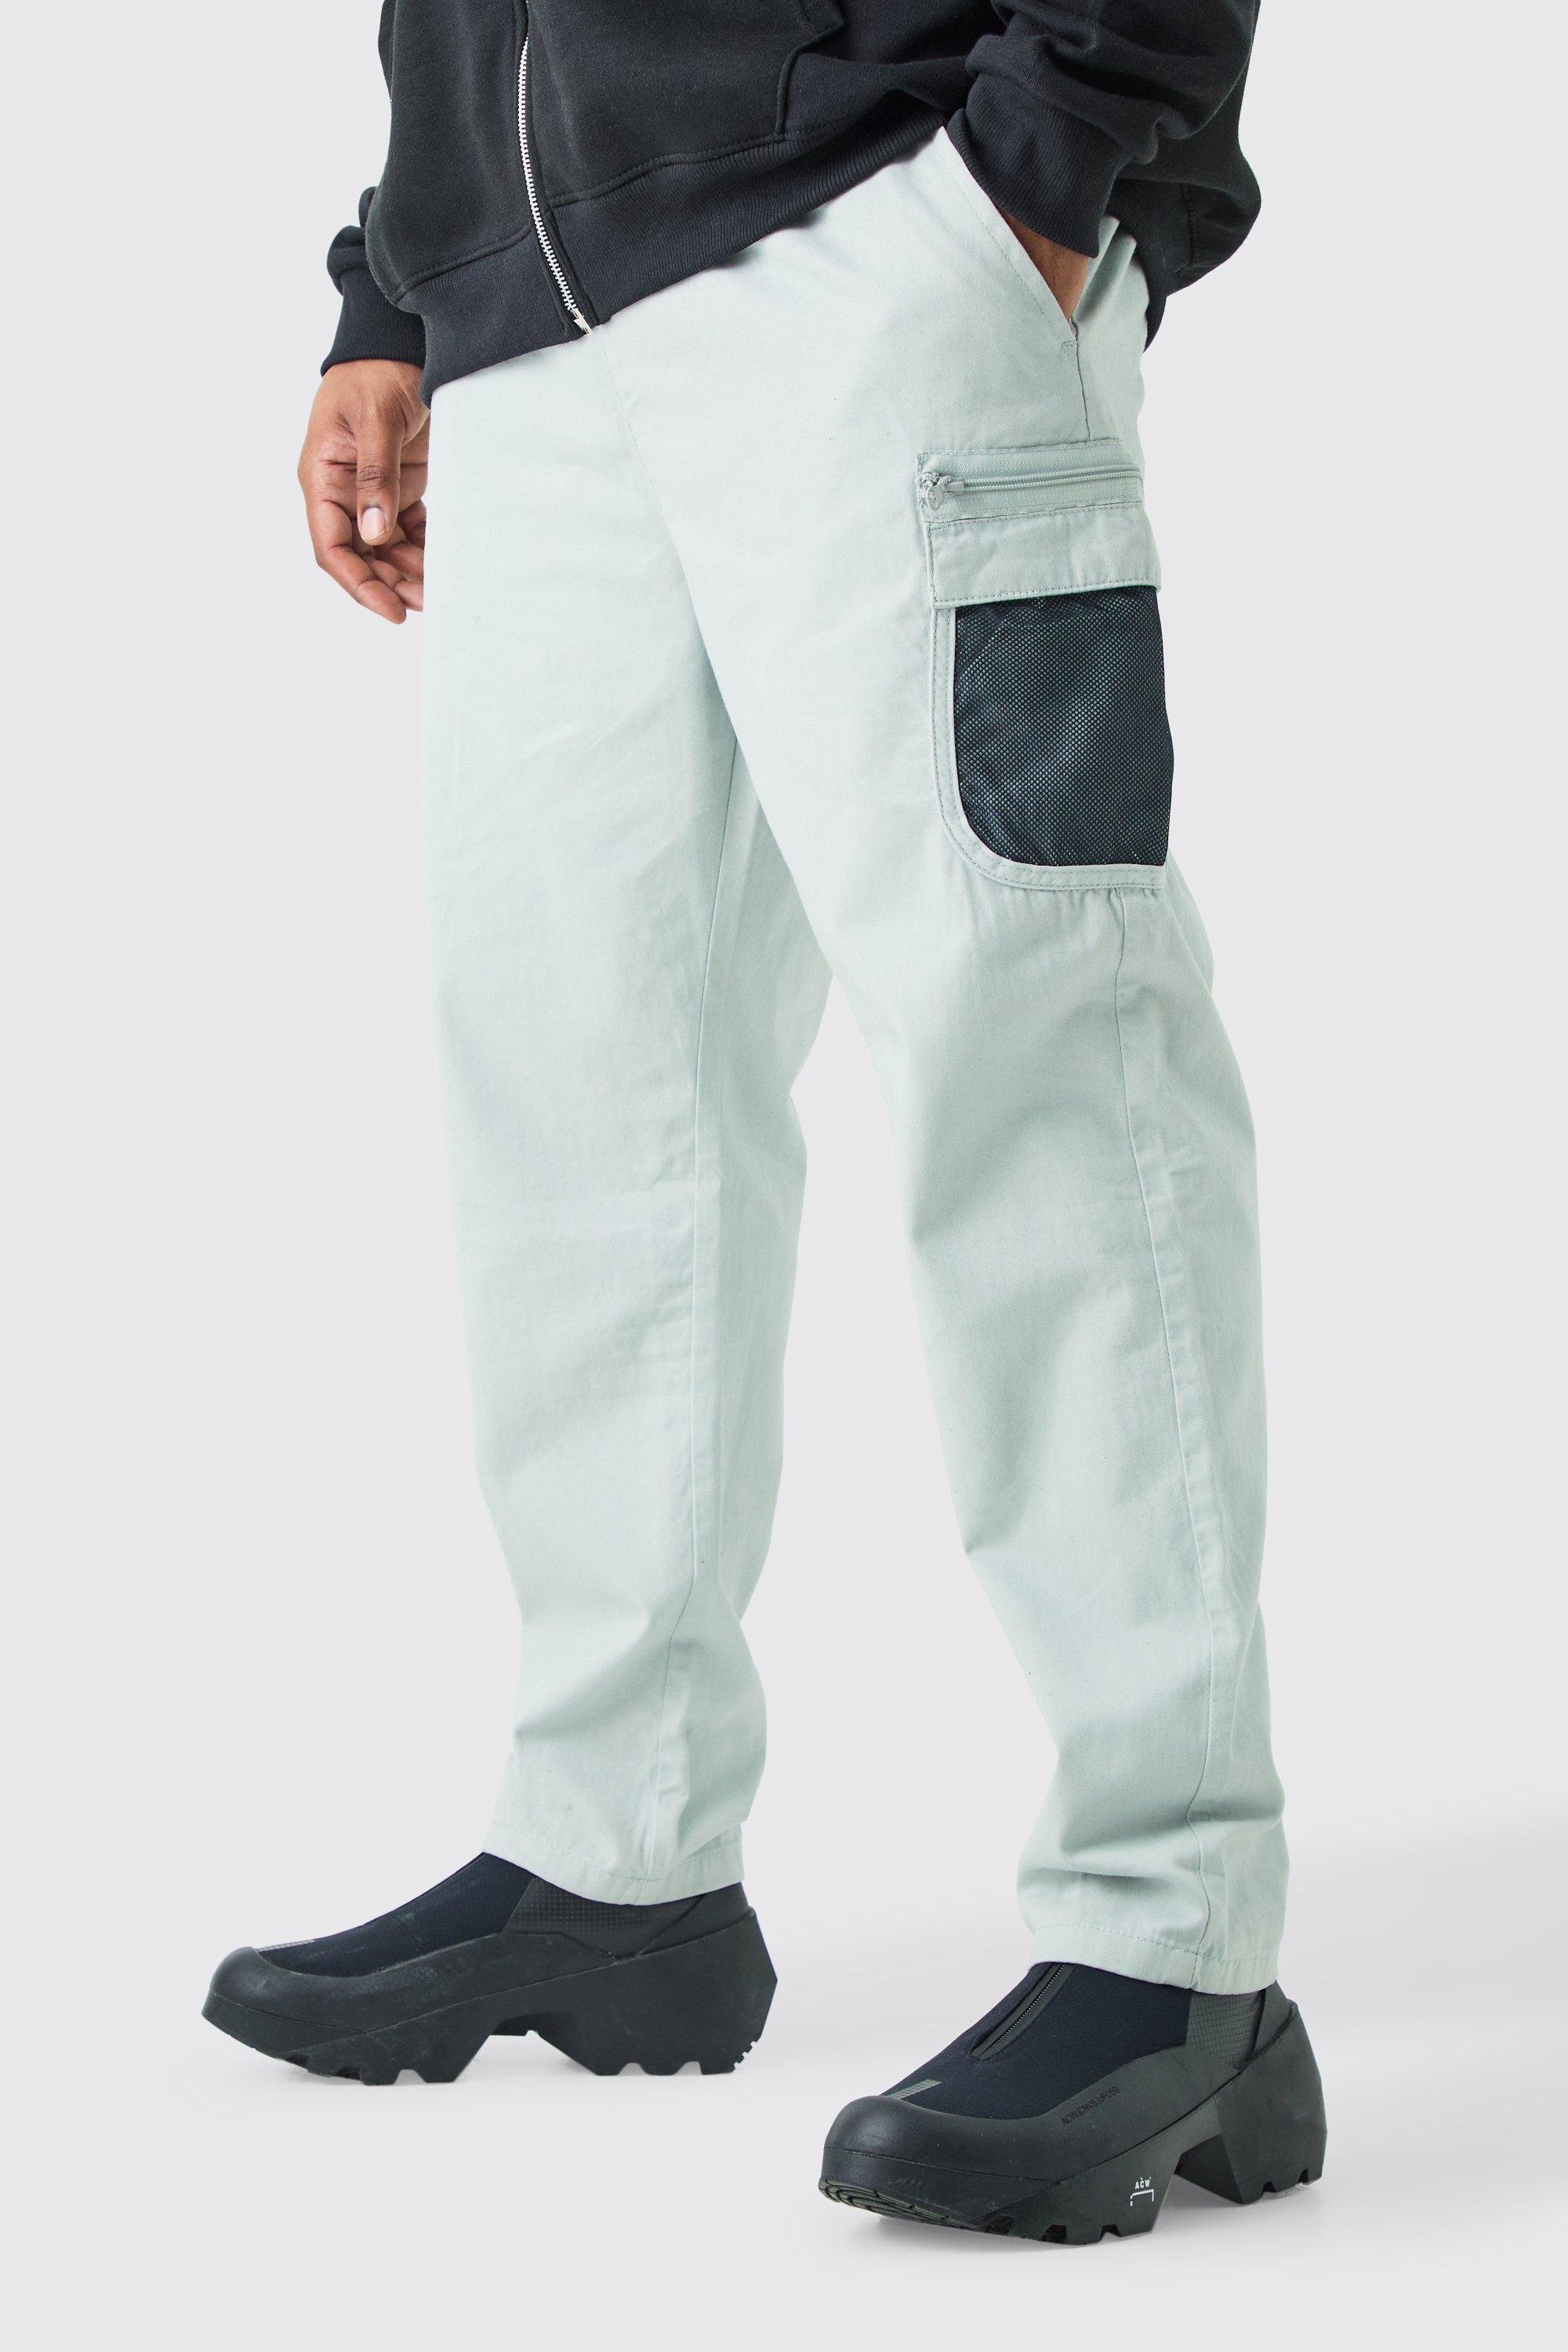 grande taille - pantalon cargo en mesh homme - gris - xxxxxl, gris